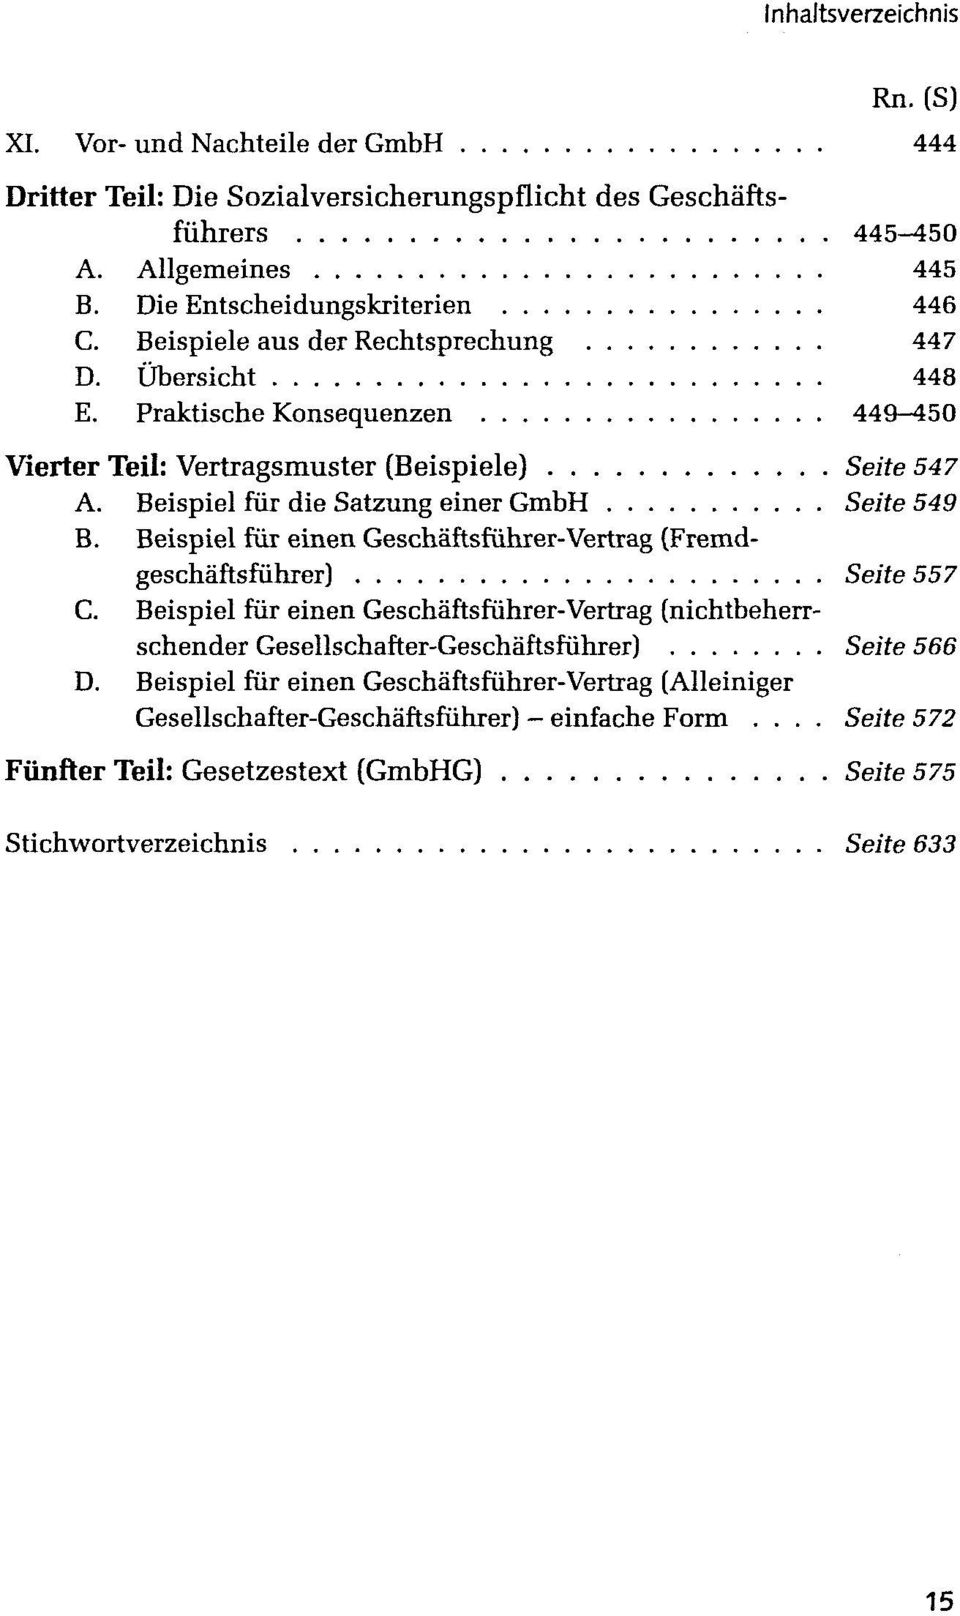 Beispiel für die Satzung einer GmbH Seife 549 B. Beispiel für einen Geschäftsführer-Vertrag (Fremdgeschäftsführer) Seife 557 C.